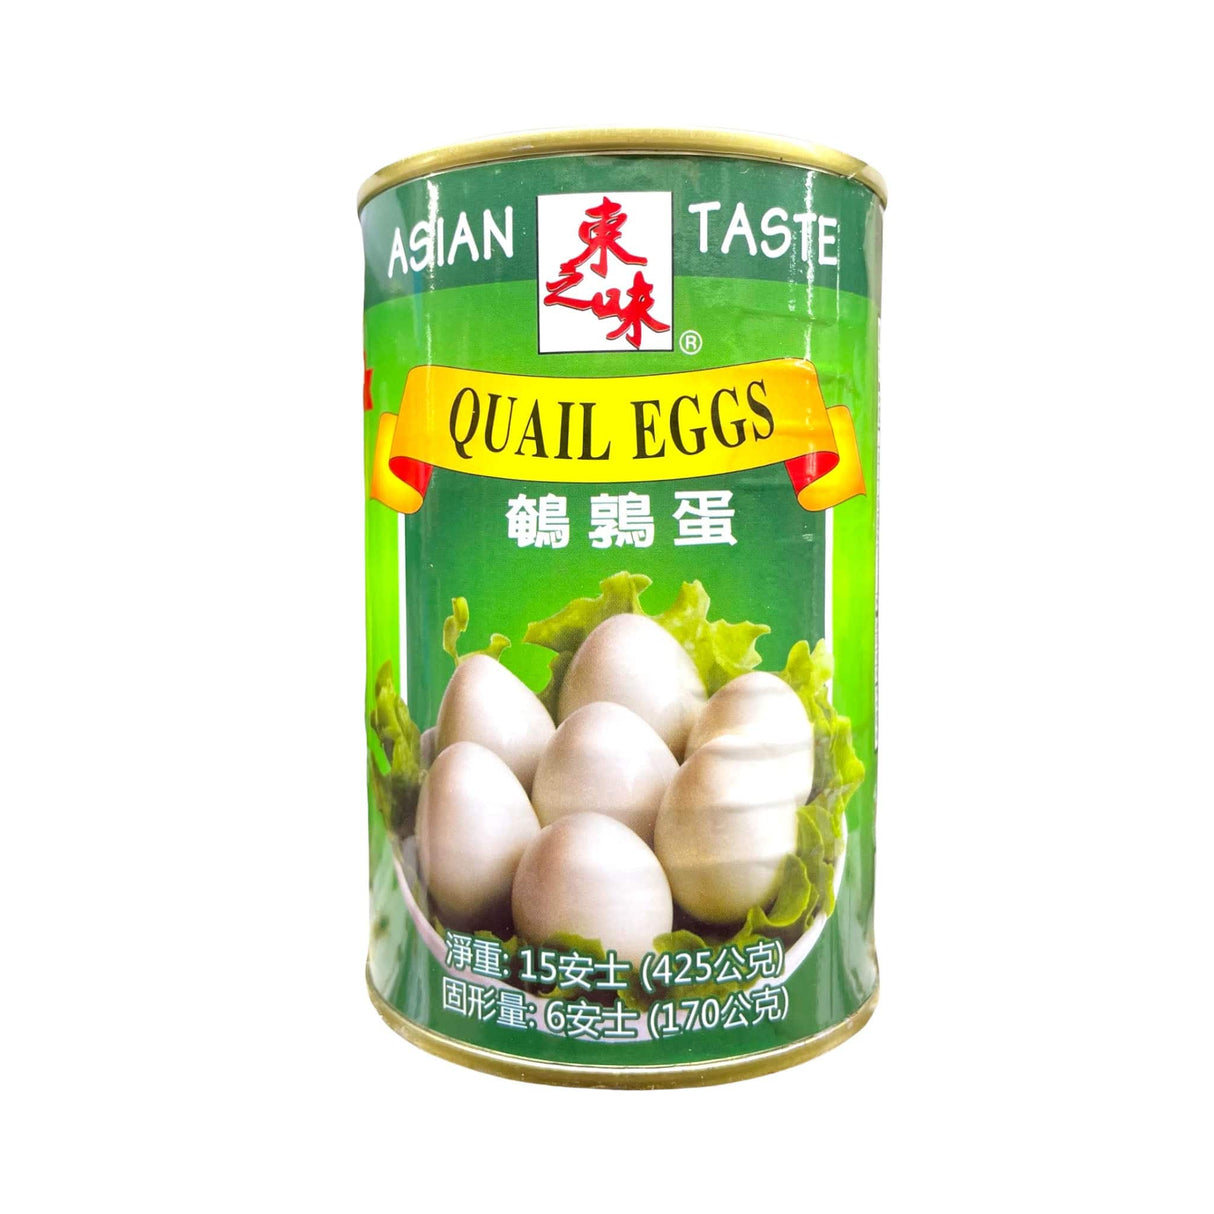 Asian Taste Quail Eggs